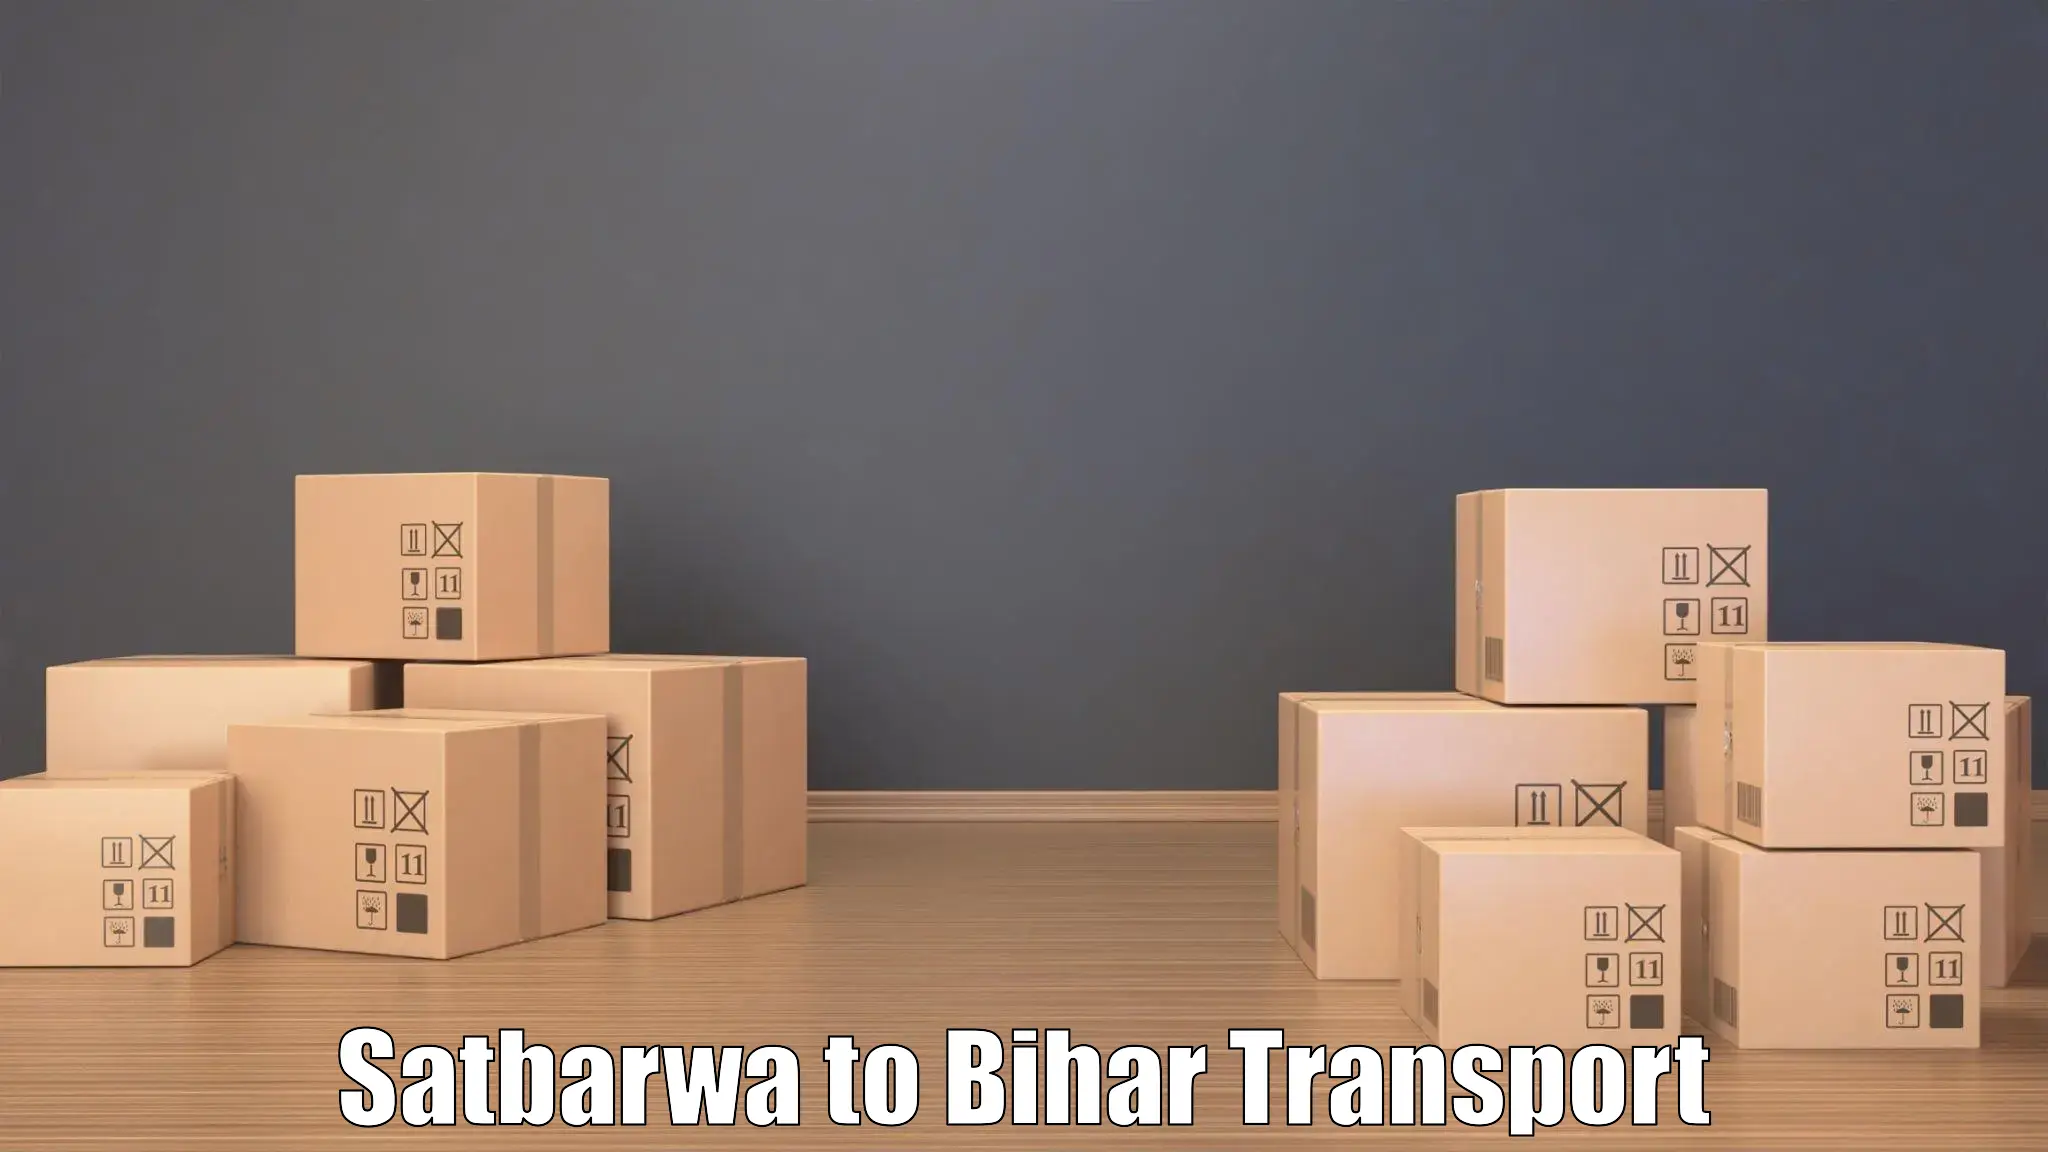 Nearby transport service Satbarwa to Korha